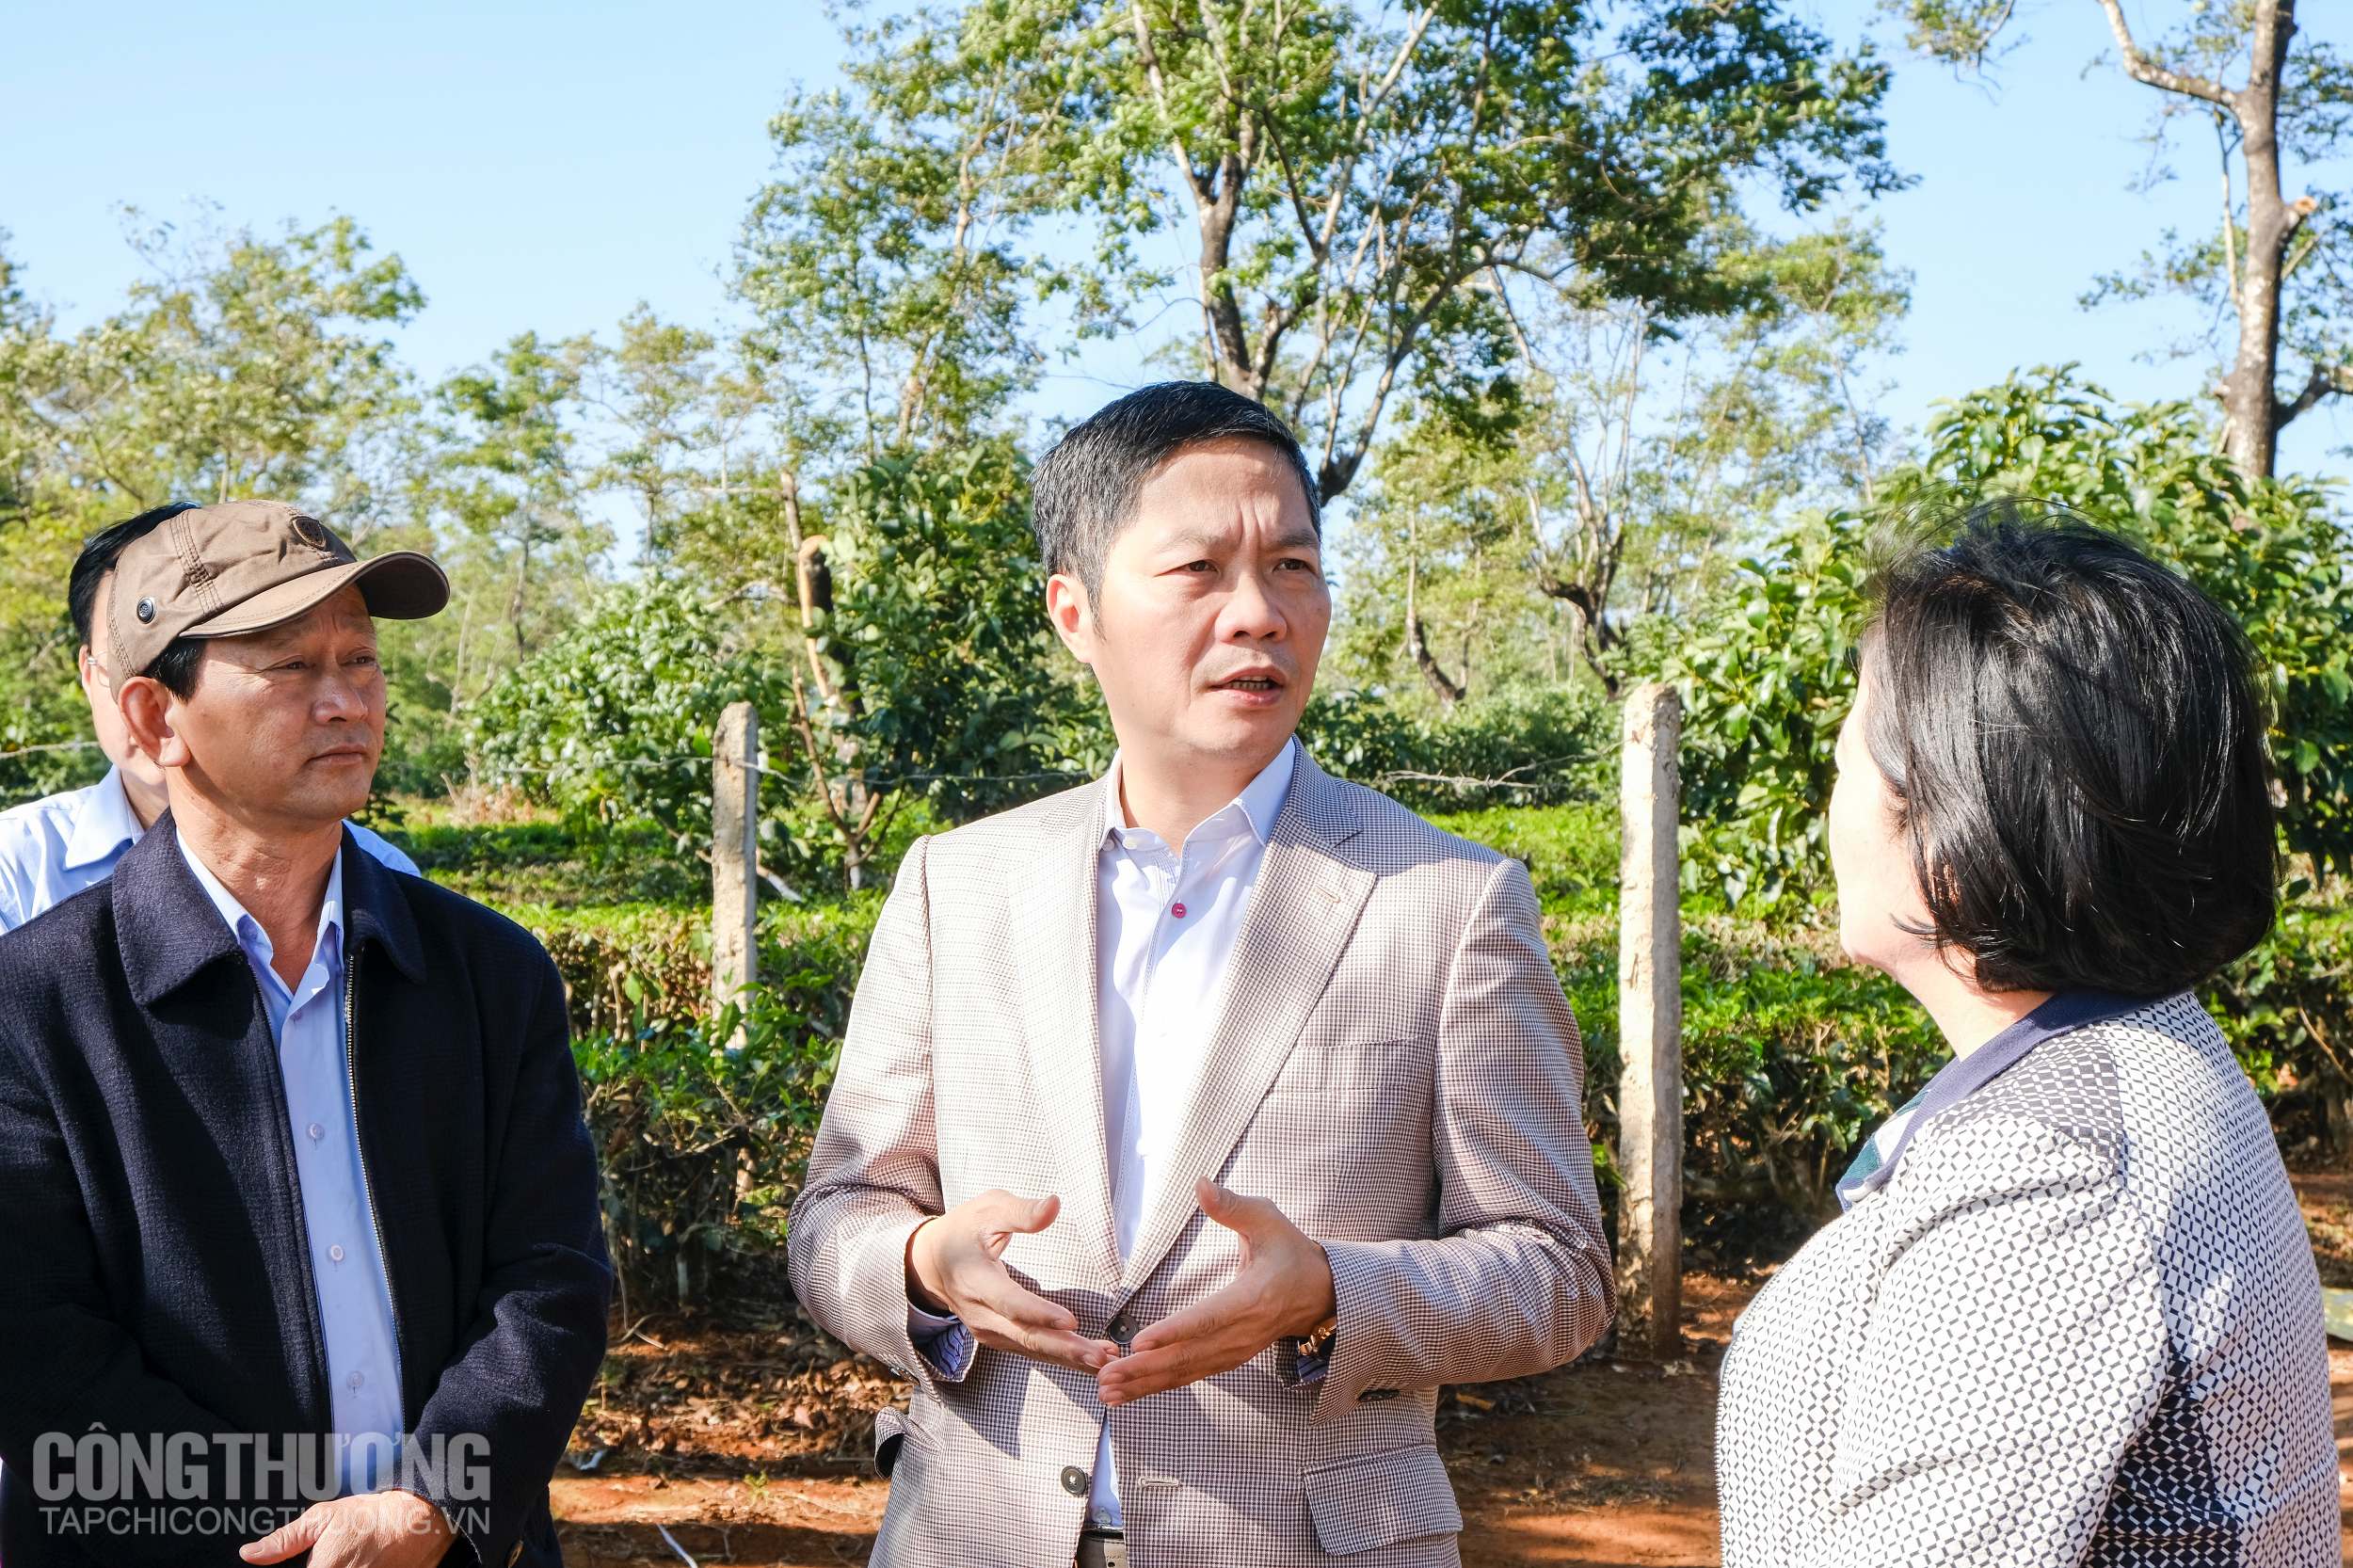 Bộ trưởng Trần Tuấn Anh và Bí thư Tỉnh uỷ Gia Lai - Dương Văn Trang đi thực tế tại dự án điện gió điện gió đang được triển khai tại Gia Lai